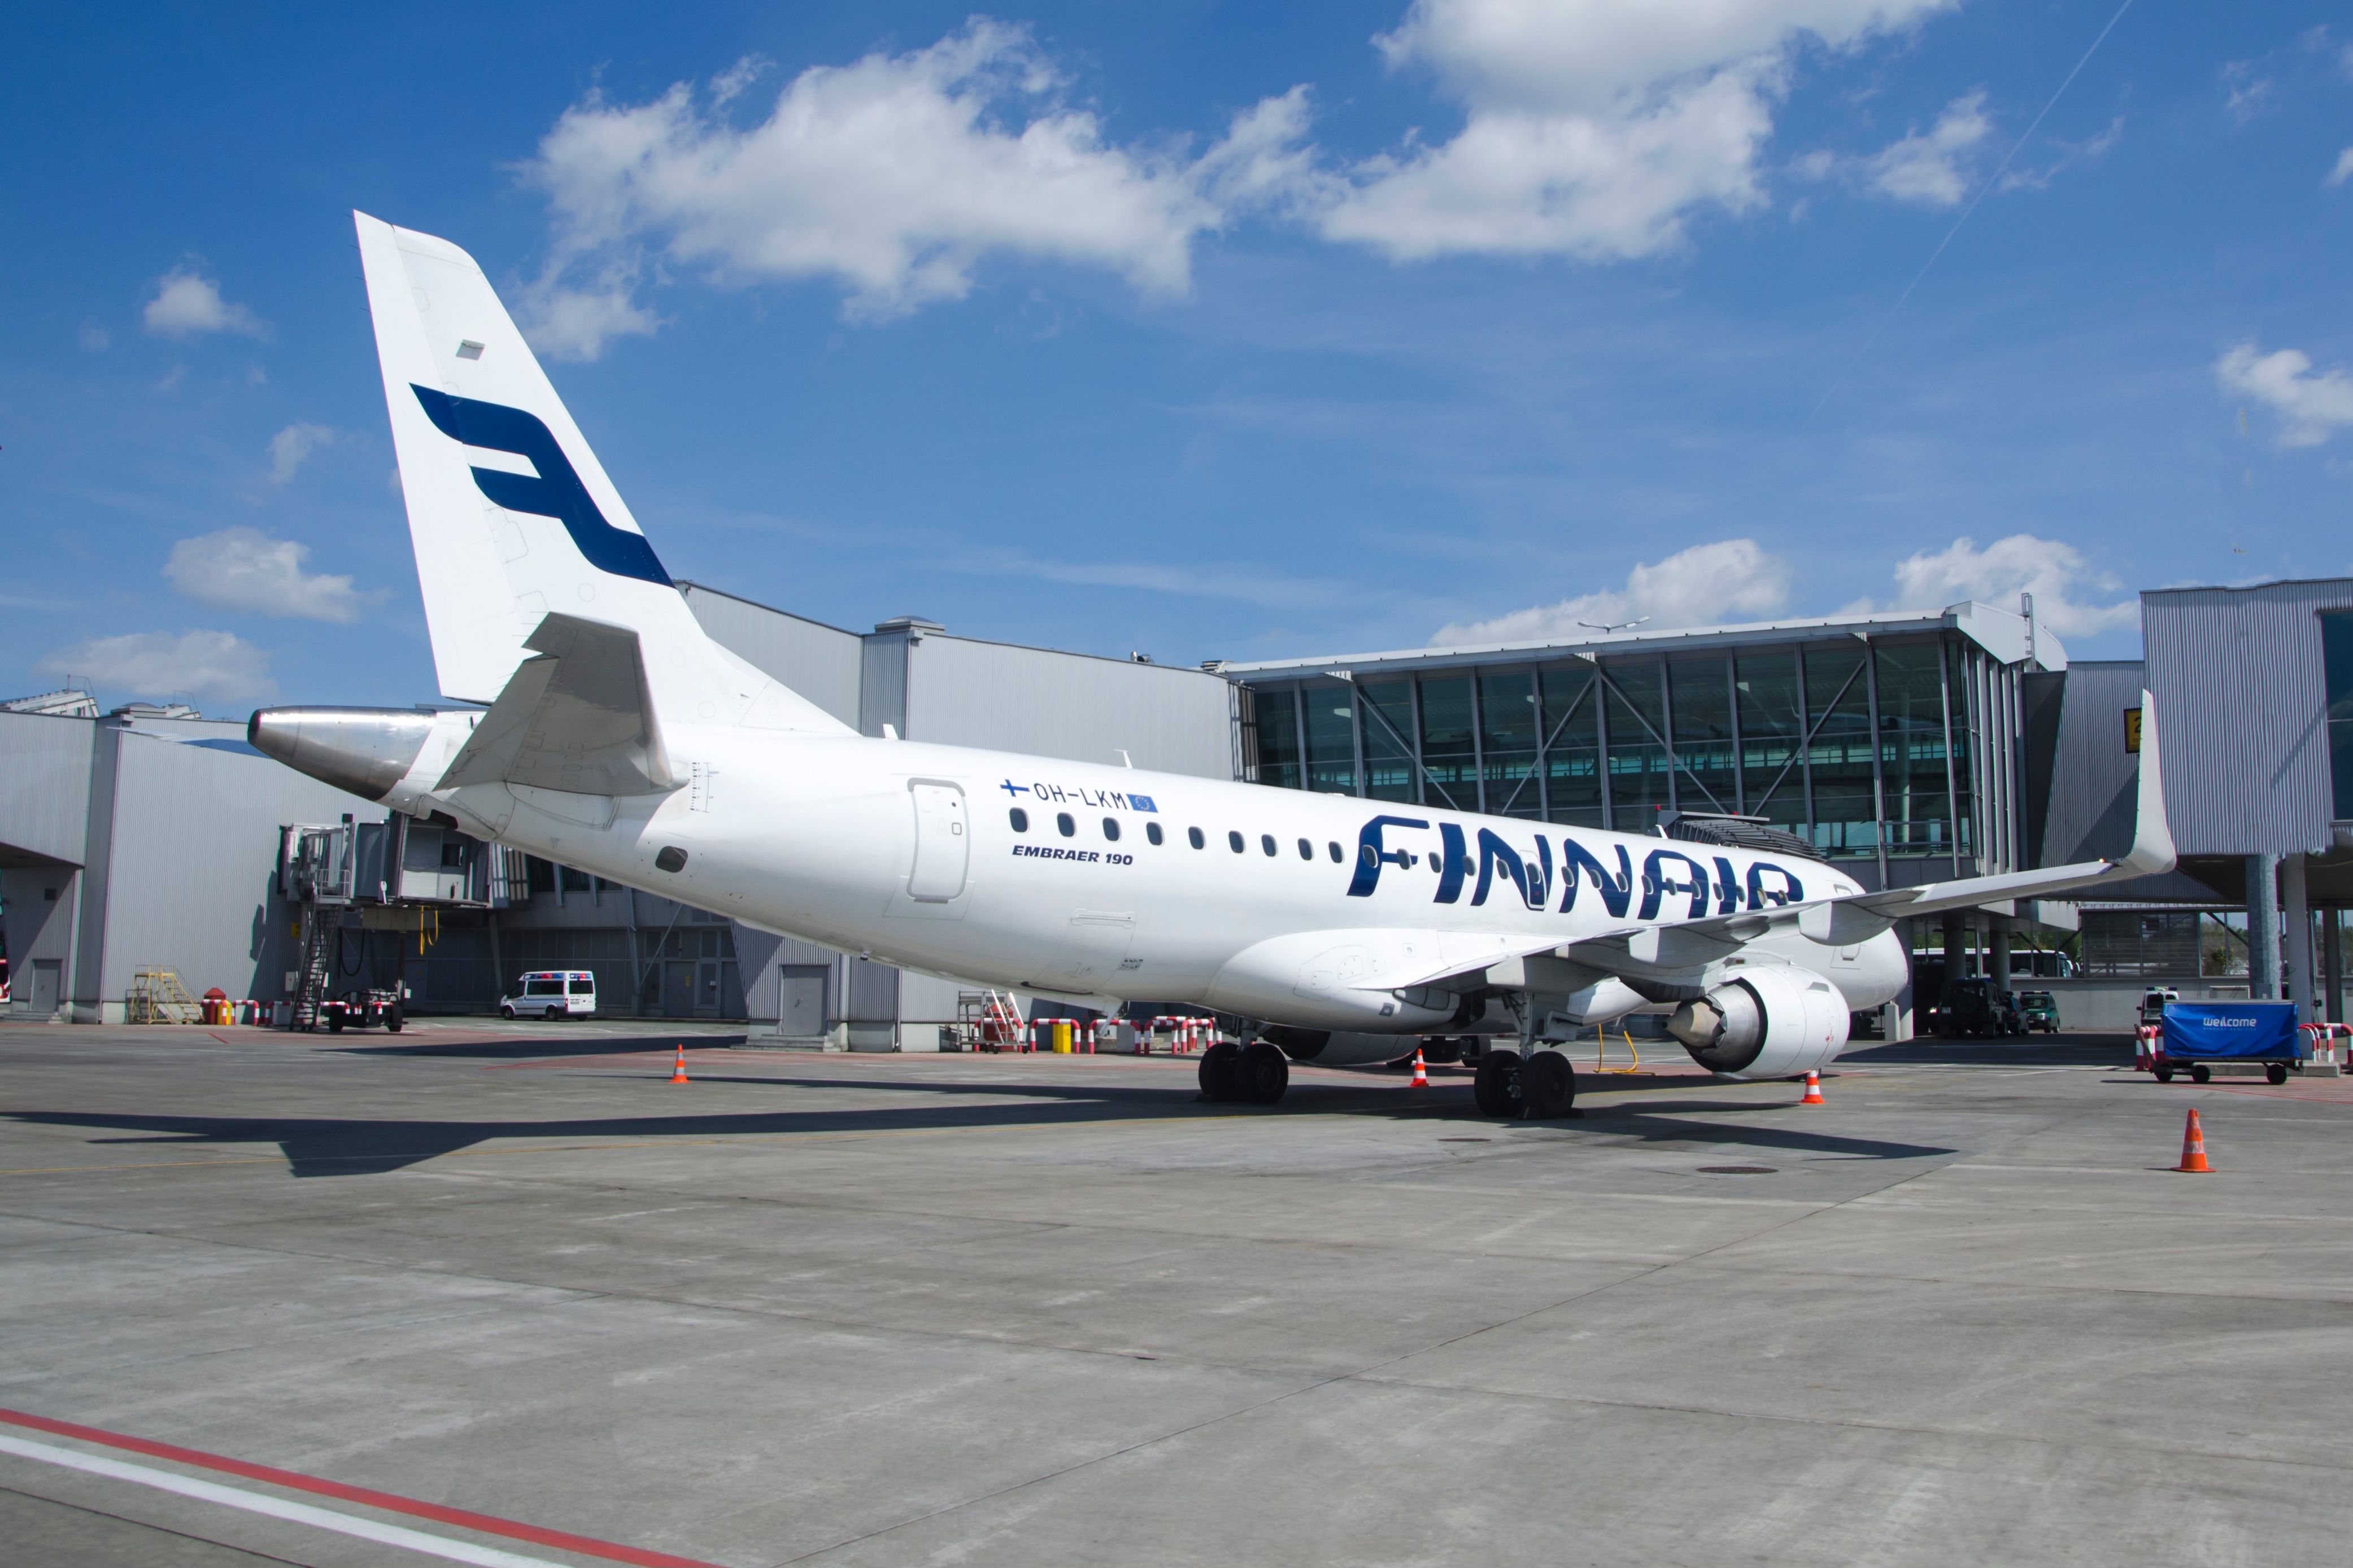 Finnair E190 at gate